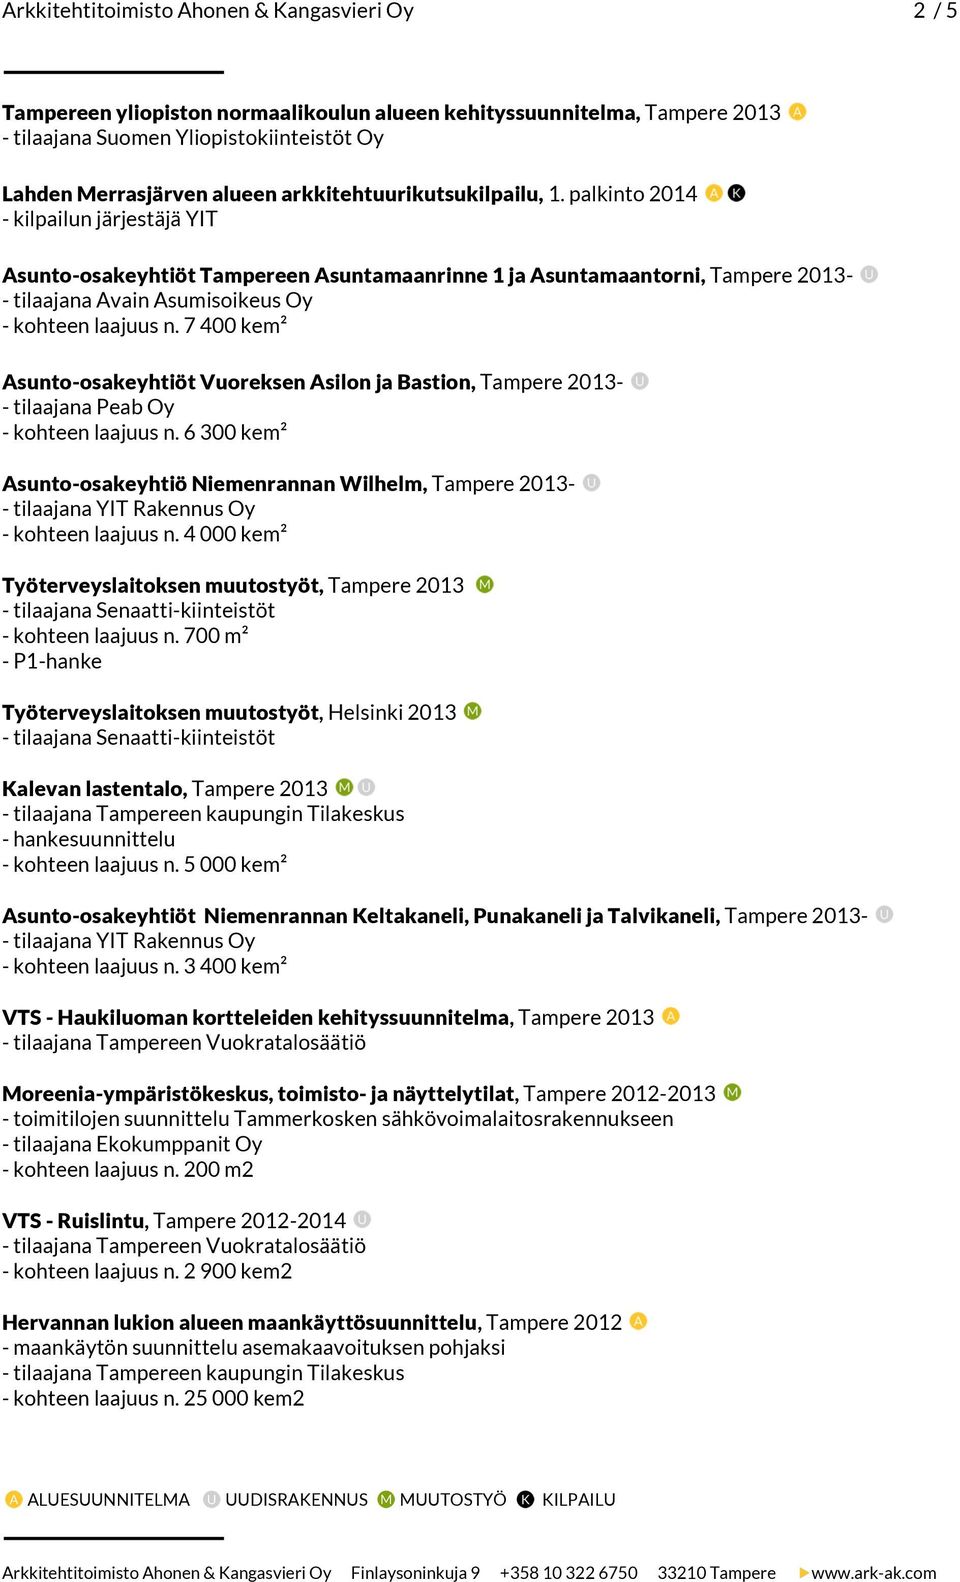 7 400 kem² Asunto-osakeyhtiöt Vuoreksen Asilon ja Bastion, Tampere 2013- - kohteen laajuus n. 6 300 kem² Asunto-osakeyhtiö Niemenrannan Wilhelm, Tampere 2013- - kohteen laajuus n.